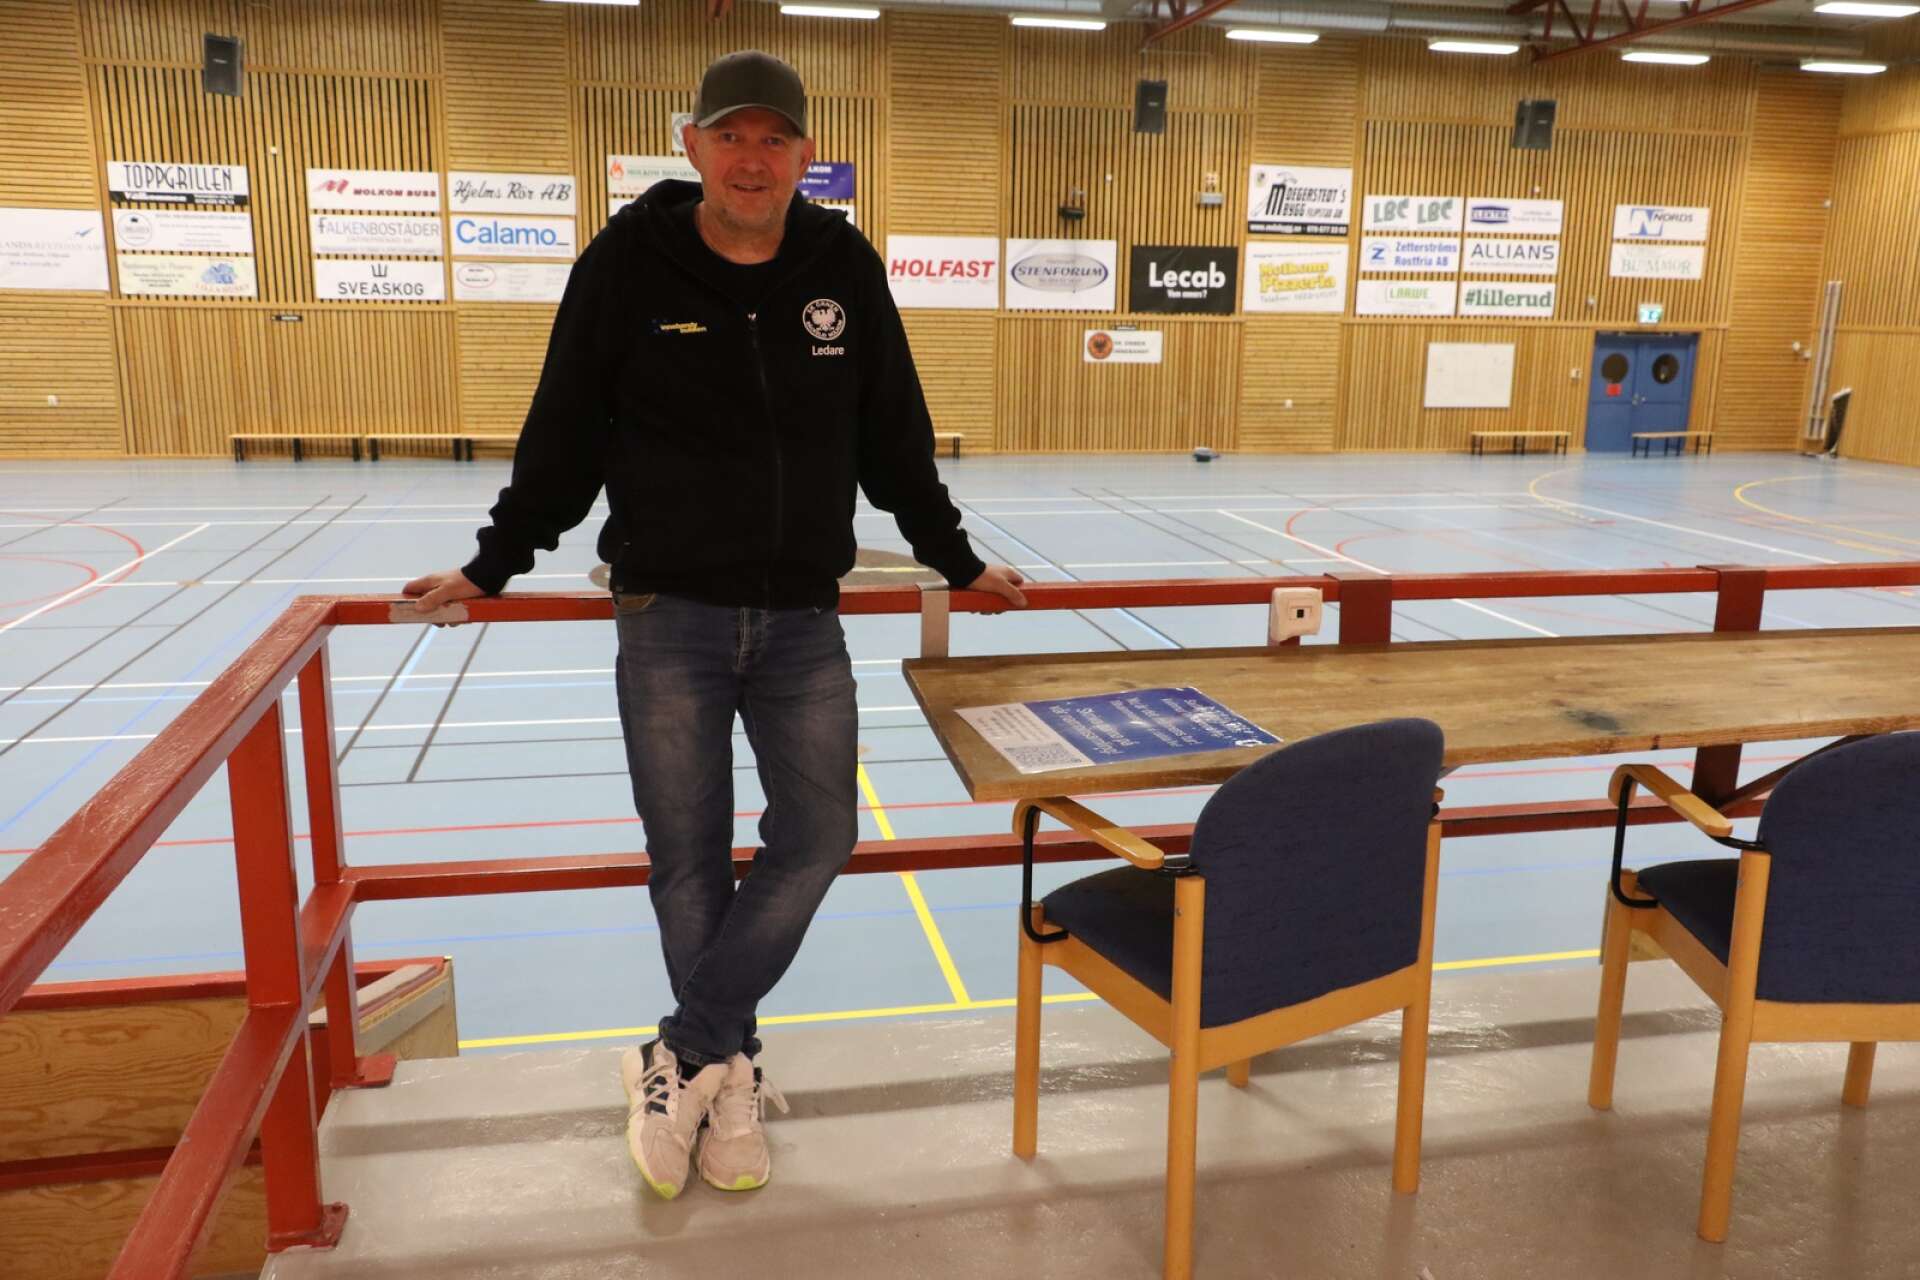 Örnens tränare Jerry Magnusson, som själv har varit drabbad av prostatacancer, laddar för fredagskvällens evenemang Mustaschmatchen i Molkoms sporthall.